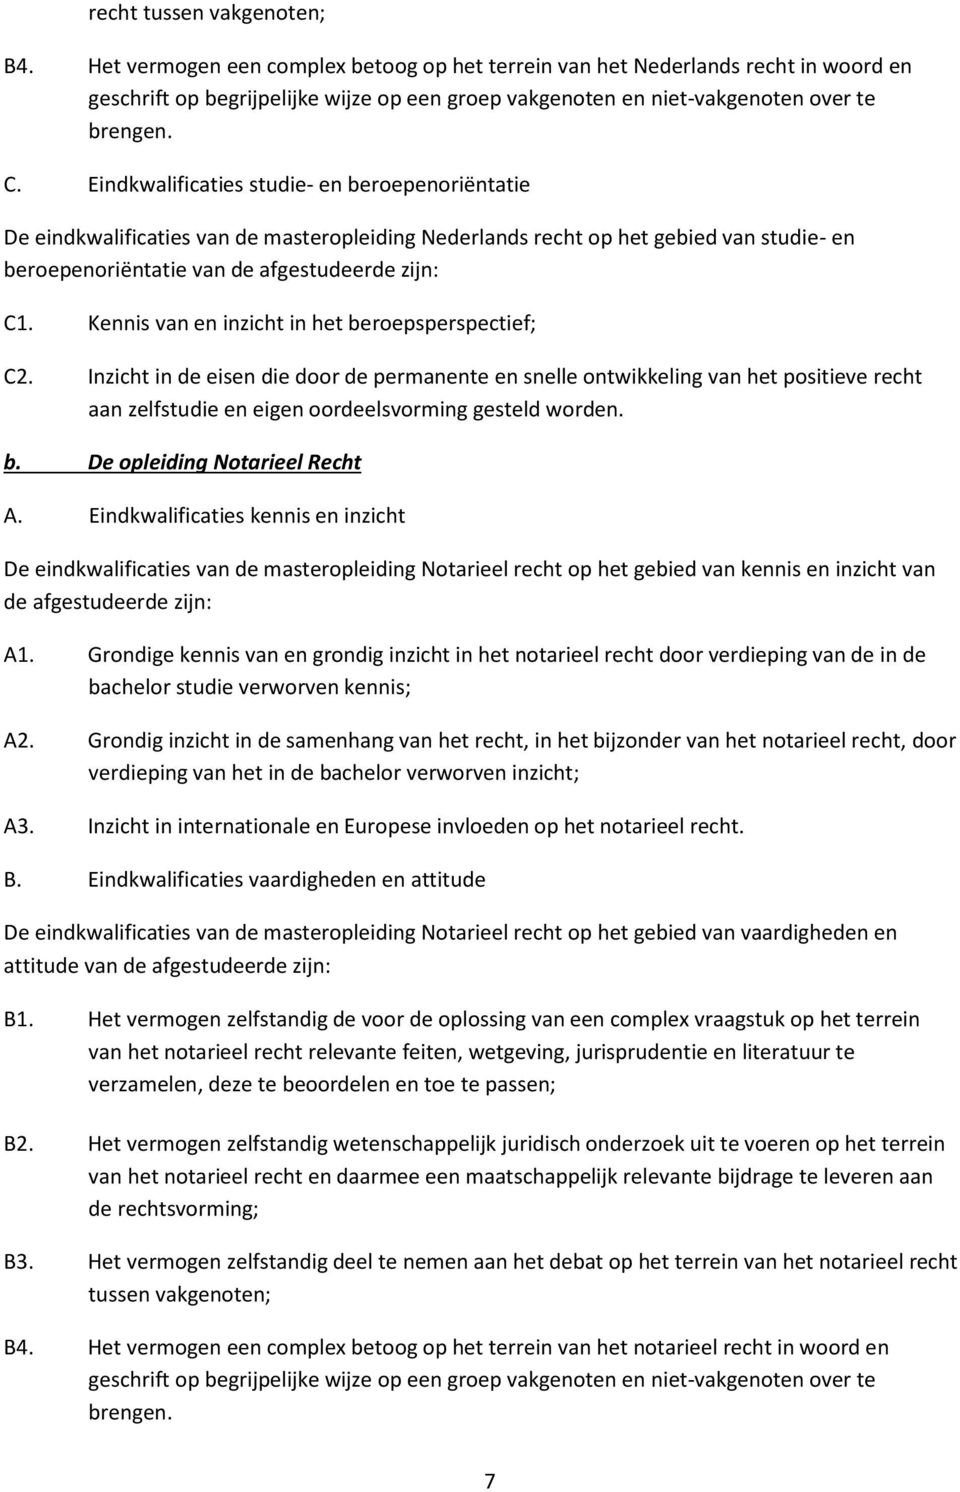 Eindkwalificaties studie- en beroepenoriëntatie De eindkwalificaties van de masteropleiding Nederlands recht op het gebied van studie- en beroepenoriëntatie van de afgestudeerde zijn: C1.